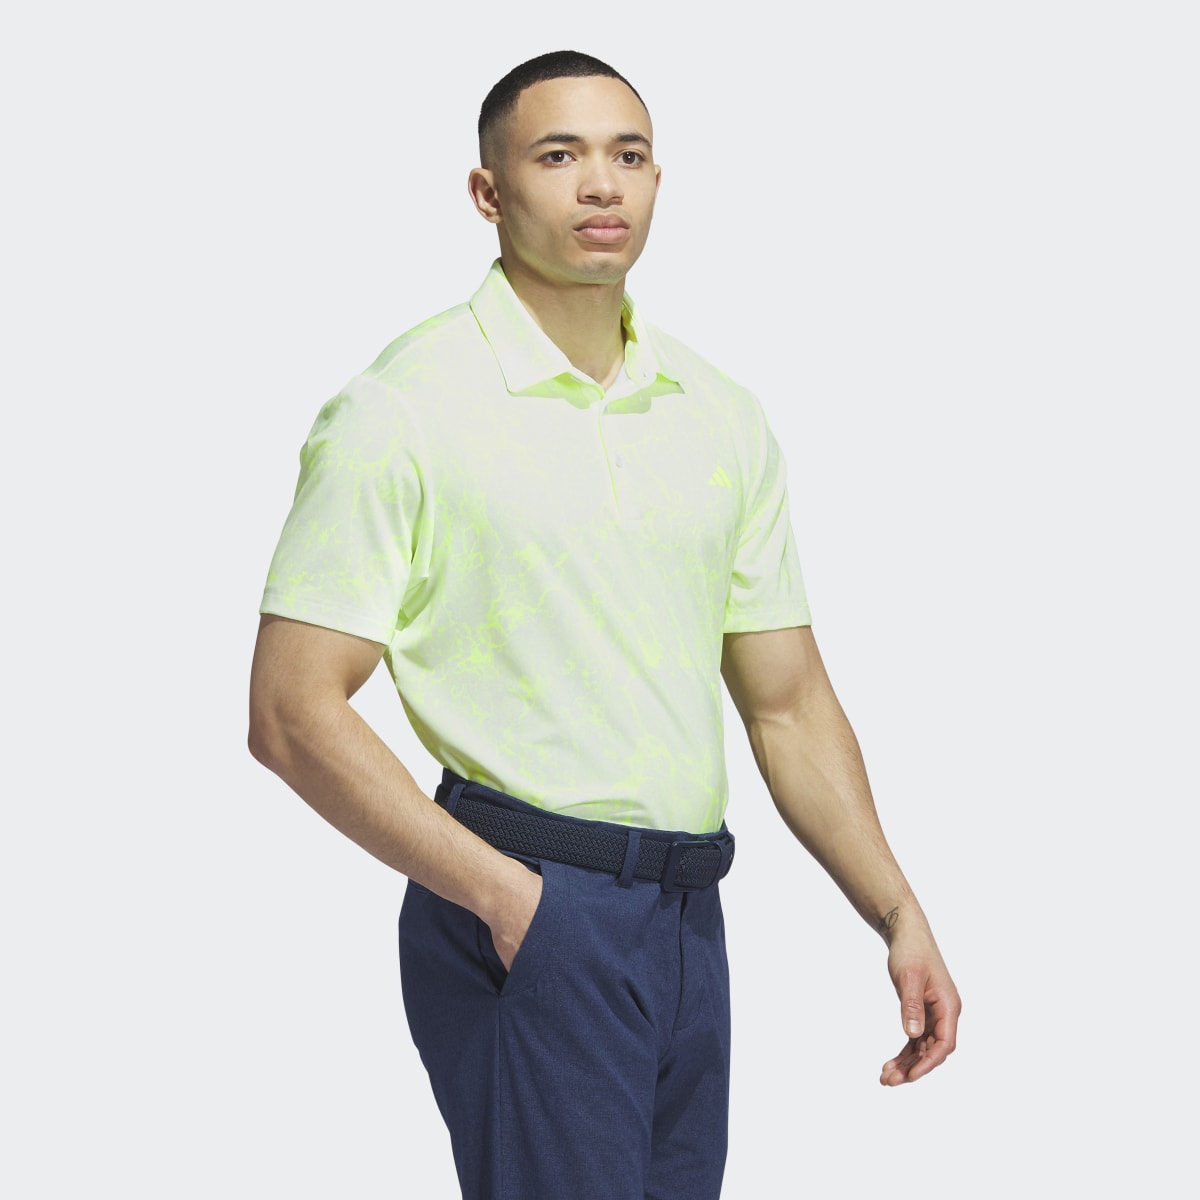 Adidas Ultimate365 Print Golf Polo Shirt. 4